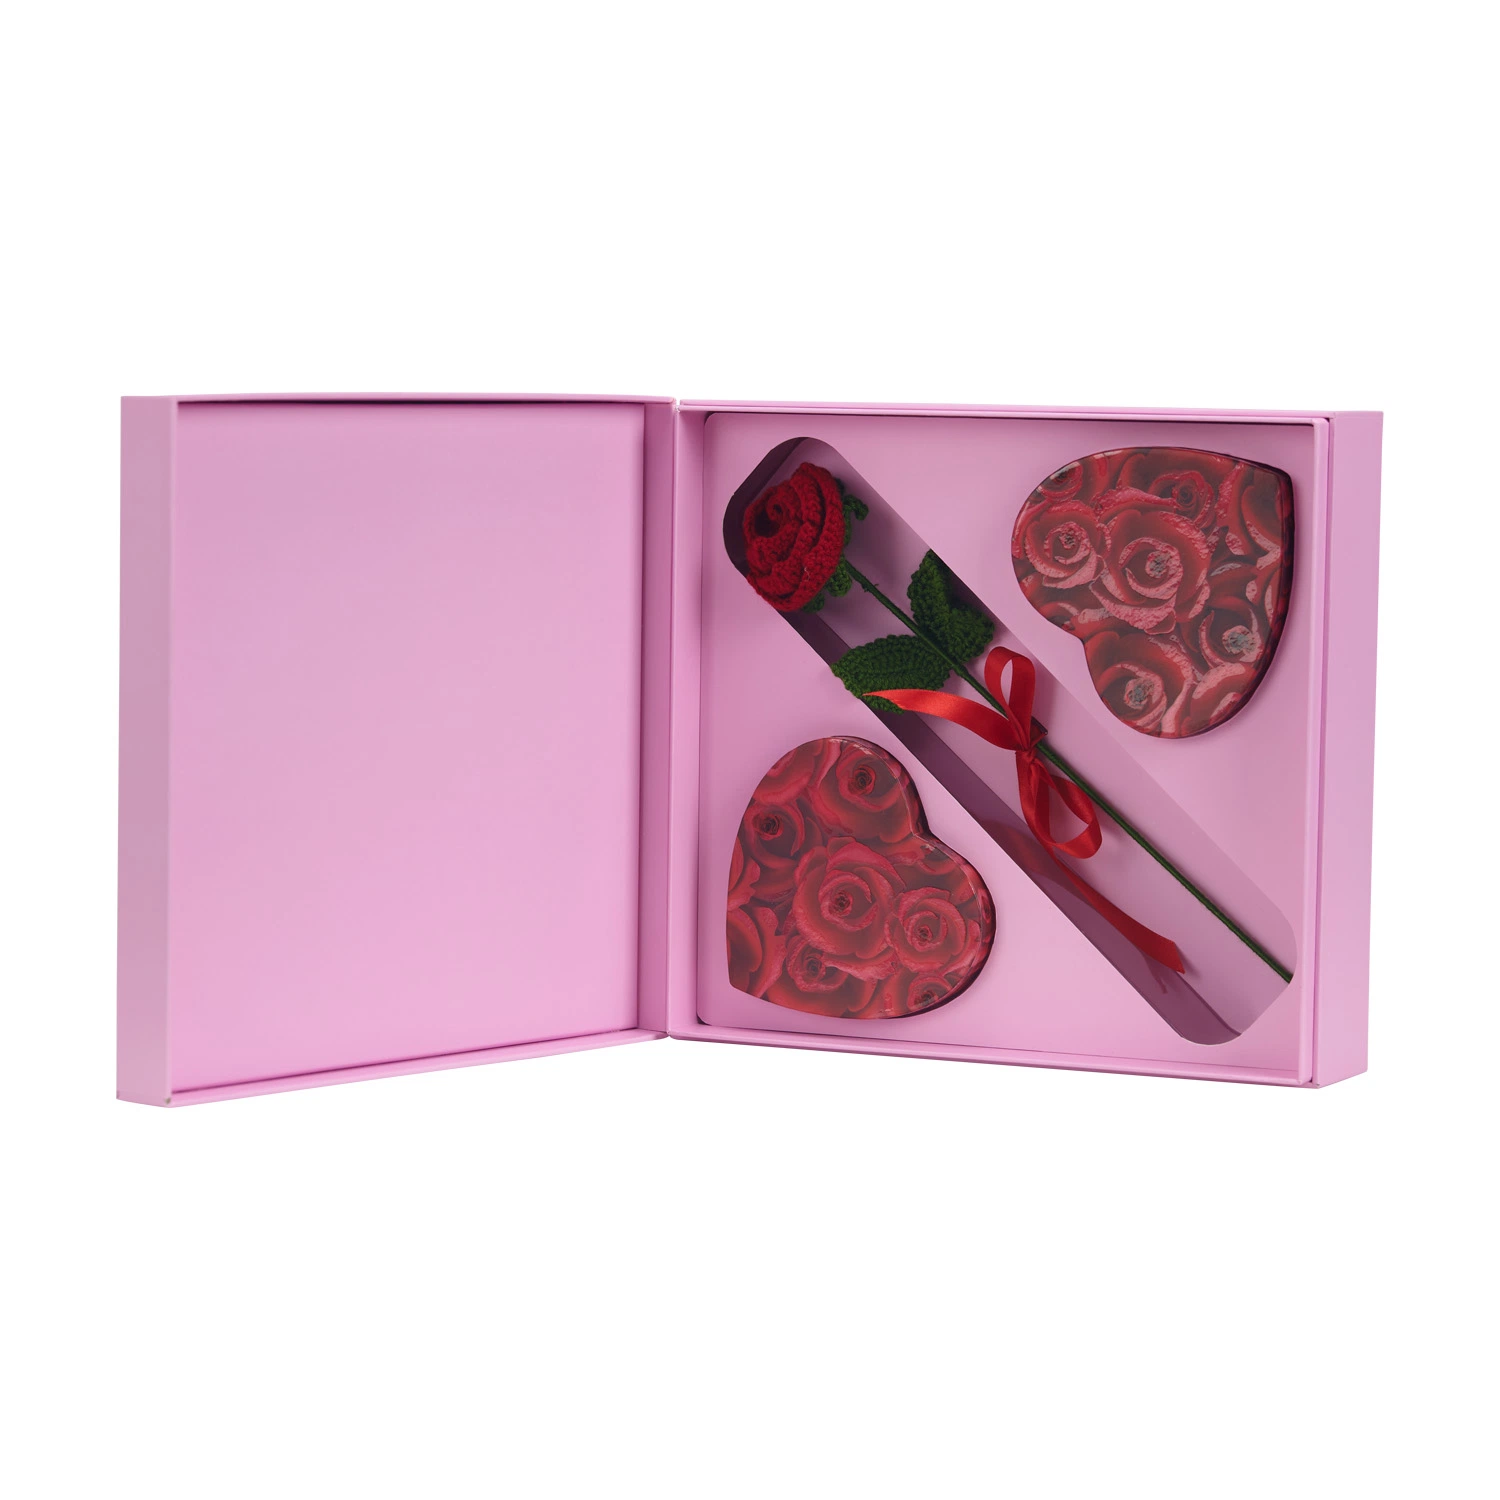 FSC Boîte d'artisanat rigide faite à la main de haute qualité Emballage cadeau de la Saint-Valentin Boîtes de chocolat de luxe Emballage personnalisé Boîte de cosmétiques de soins de la peau et de bijoux avec rose.